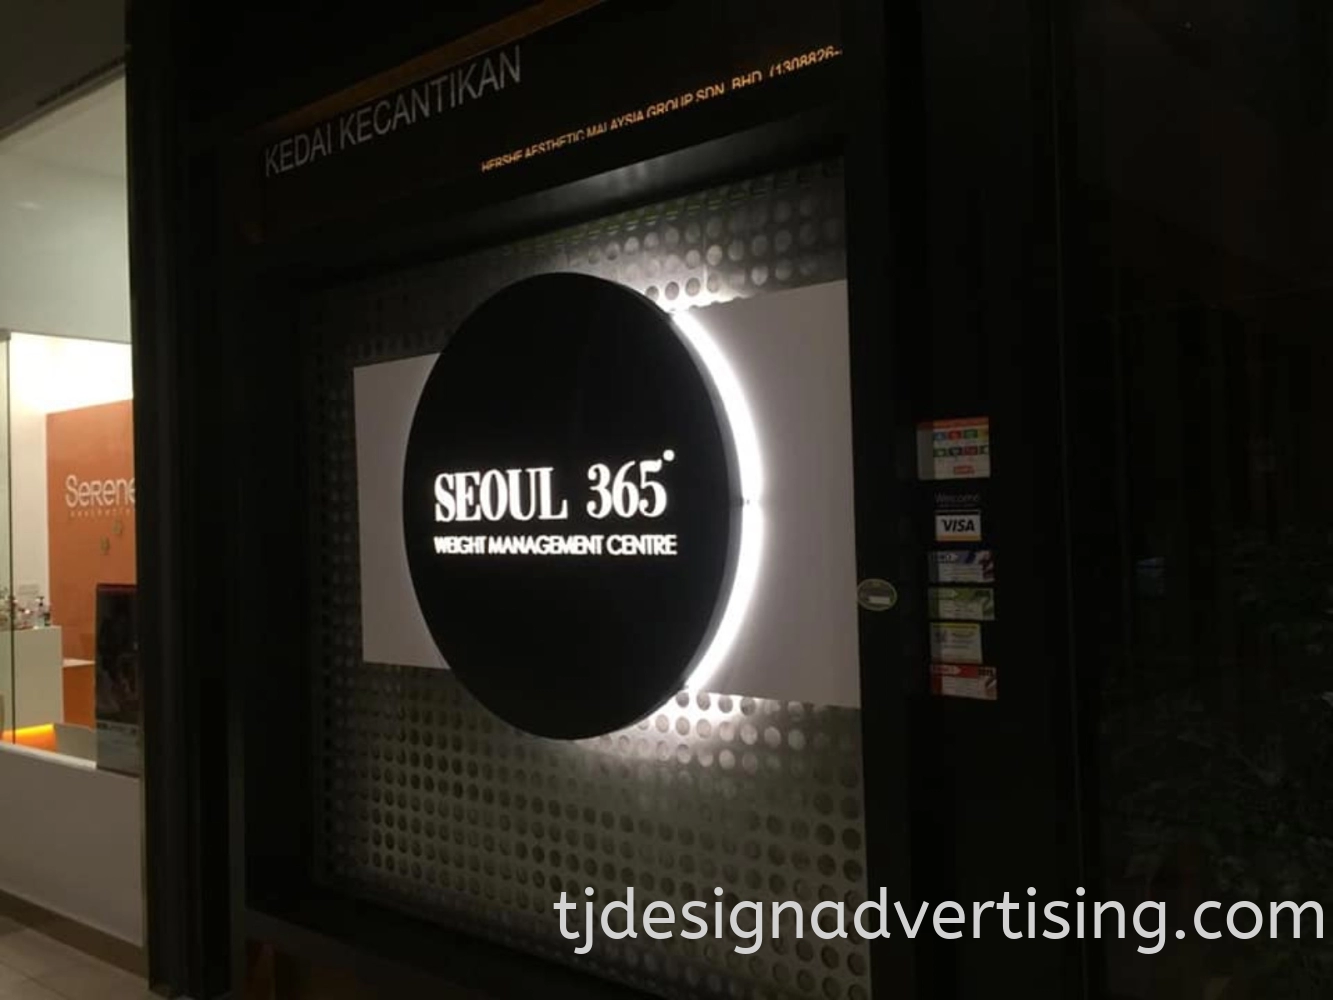 SEOUL 365